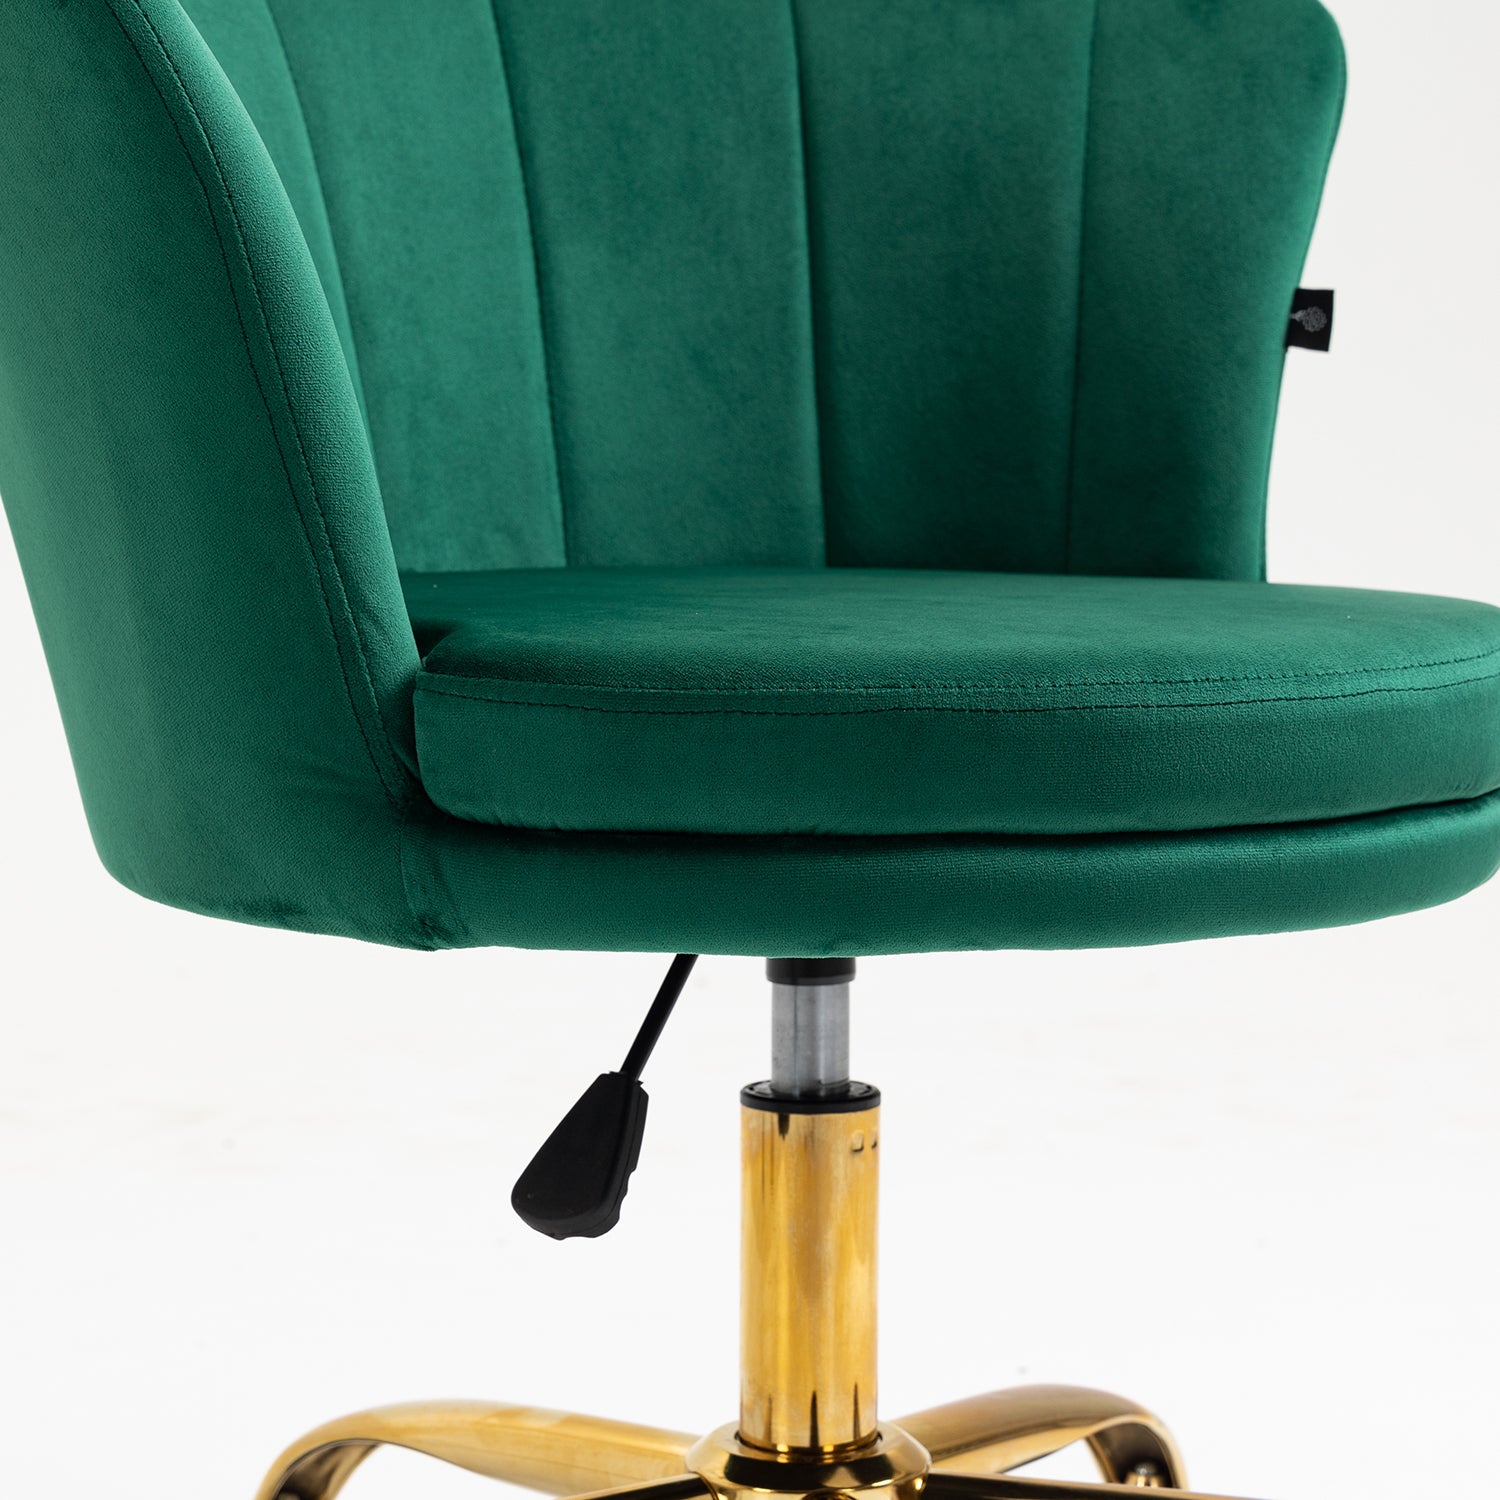 Hepburn Scalloped Swivel Chair (Green Velvet)